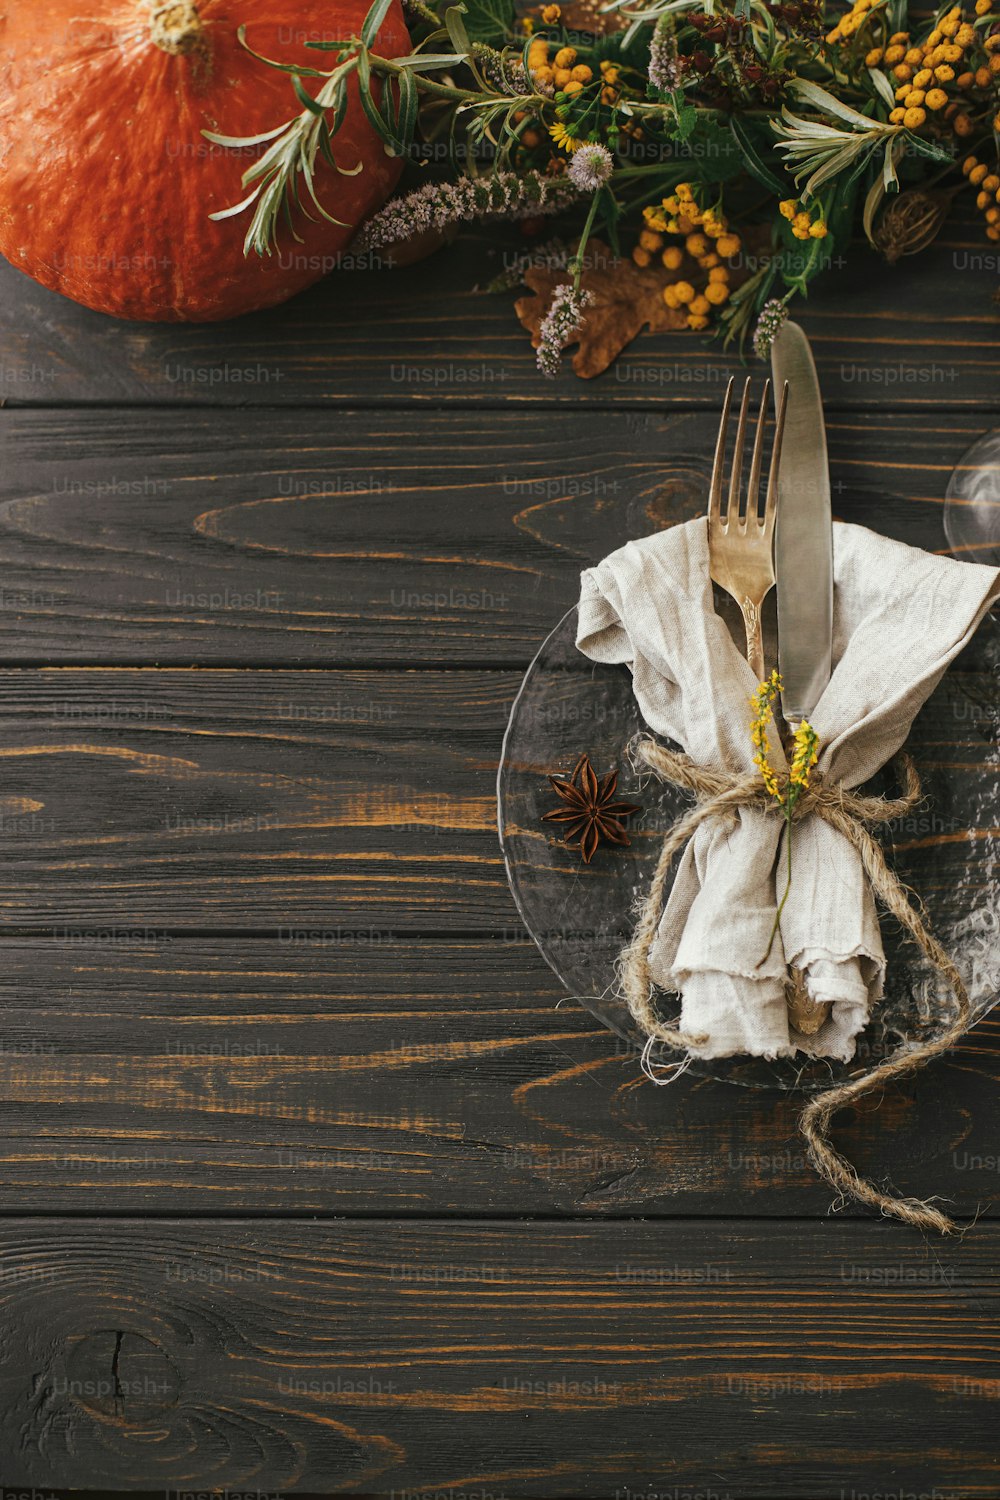 Moderner Teller mit Vintage-Besteck, Leinenserviette, Kräuter auf Holztisch mit Kürbissen und Herbstblumenarrangement. Rustikale Bauernhaushochzeit. Thanksgiving-Tischdekoration